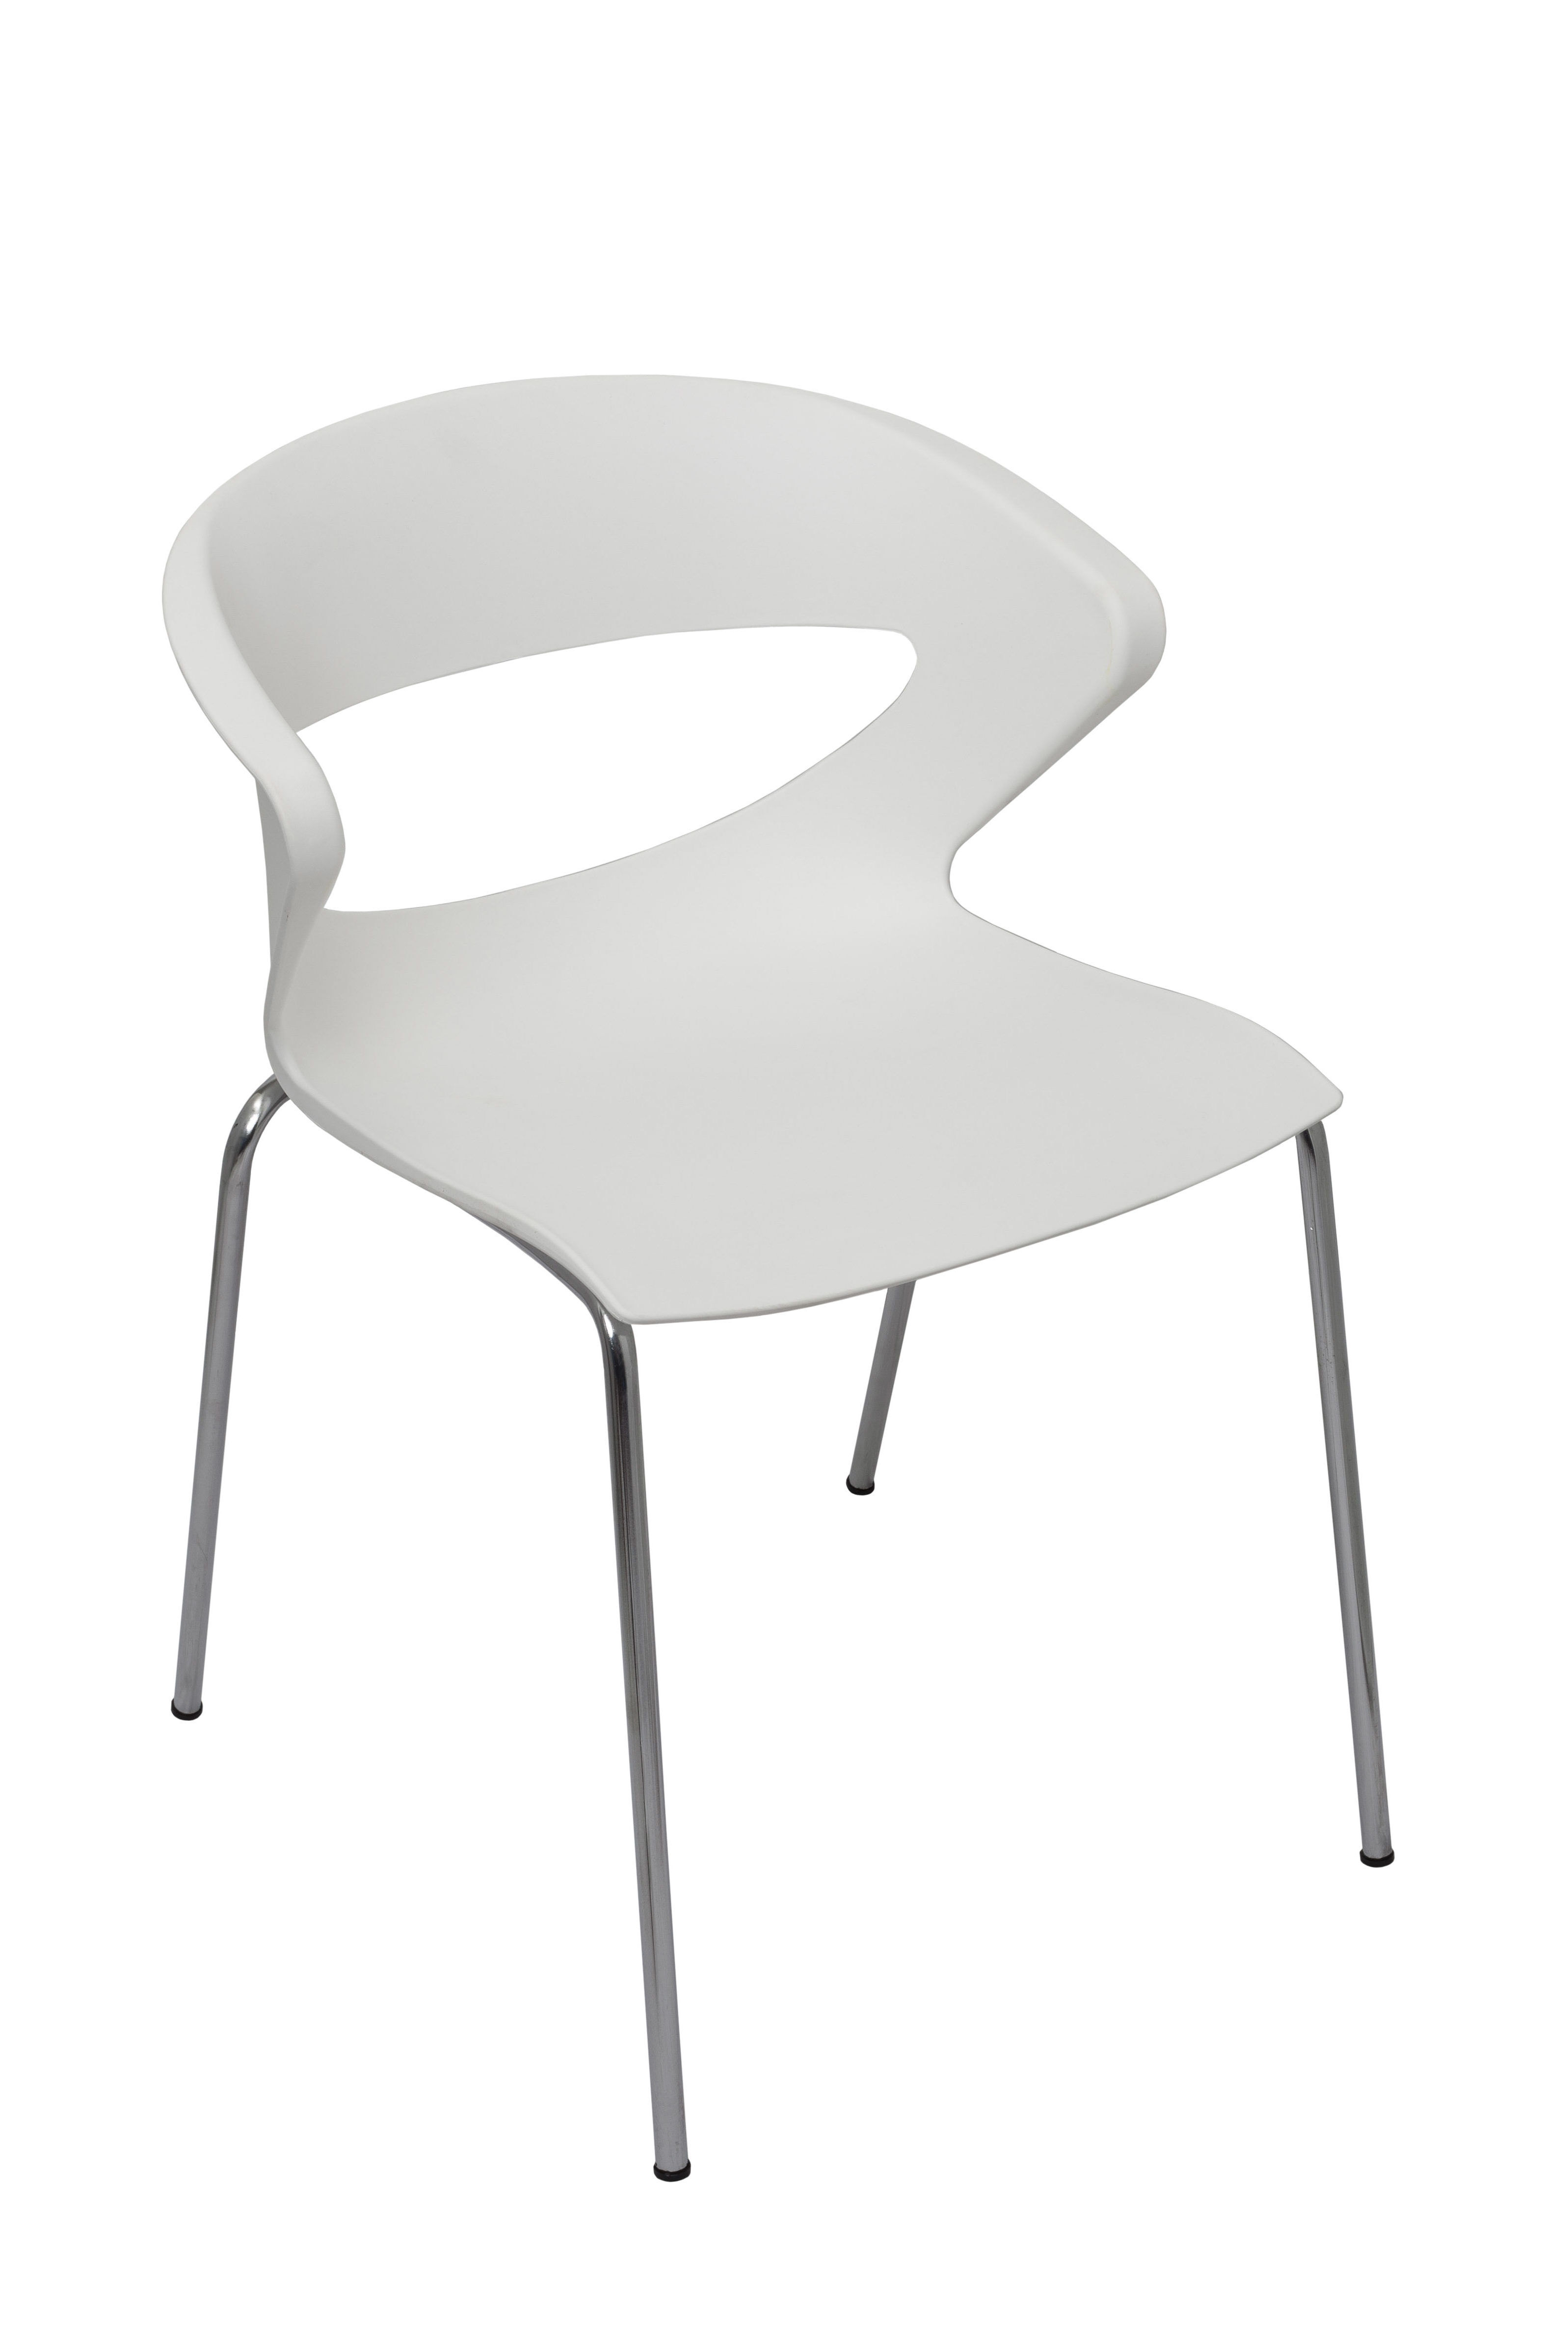 Skoda Chairs White 